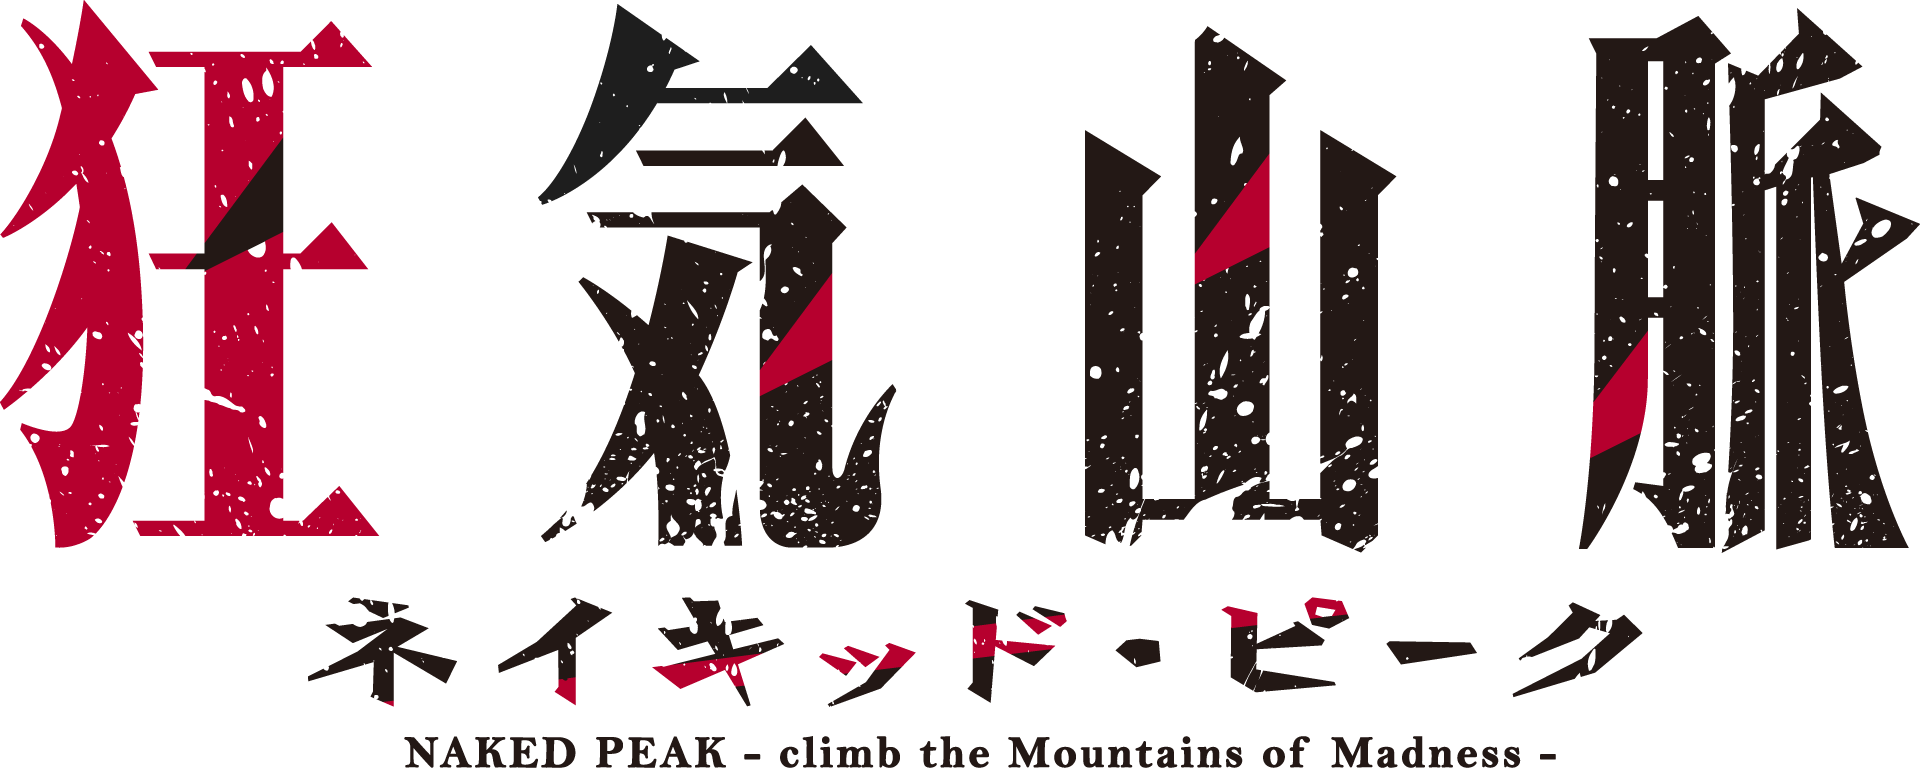 狂気山脈 ネイキッド・ピーク NAKED PEAK - climb of the Mountain of Madness